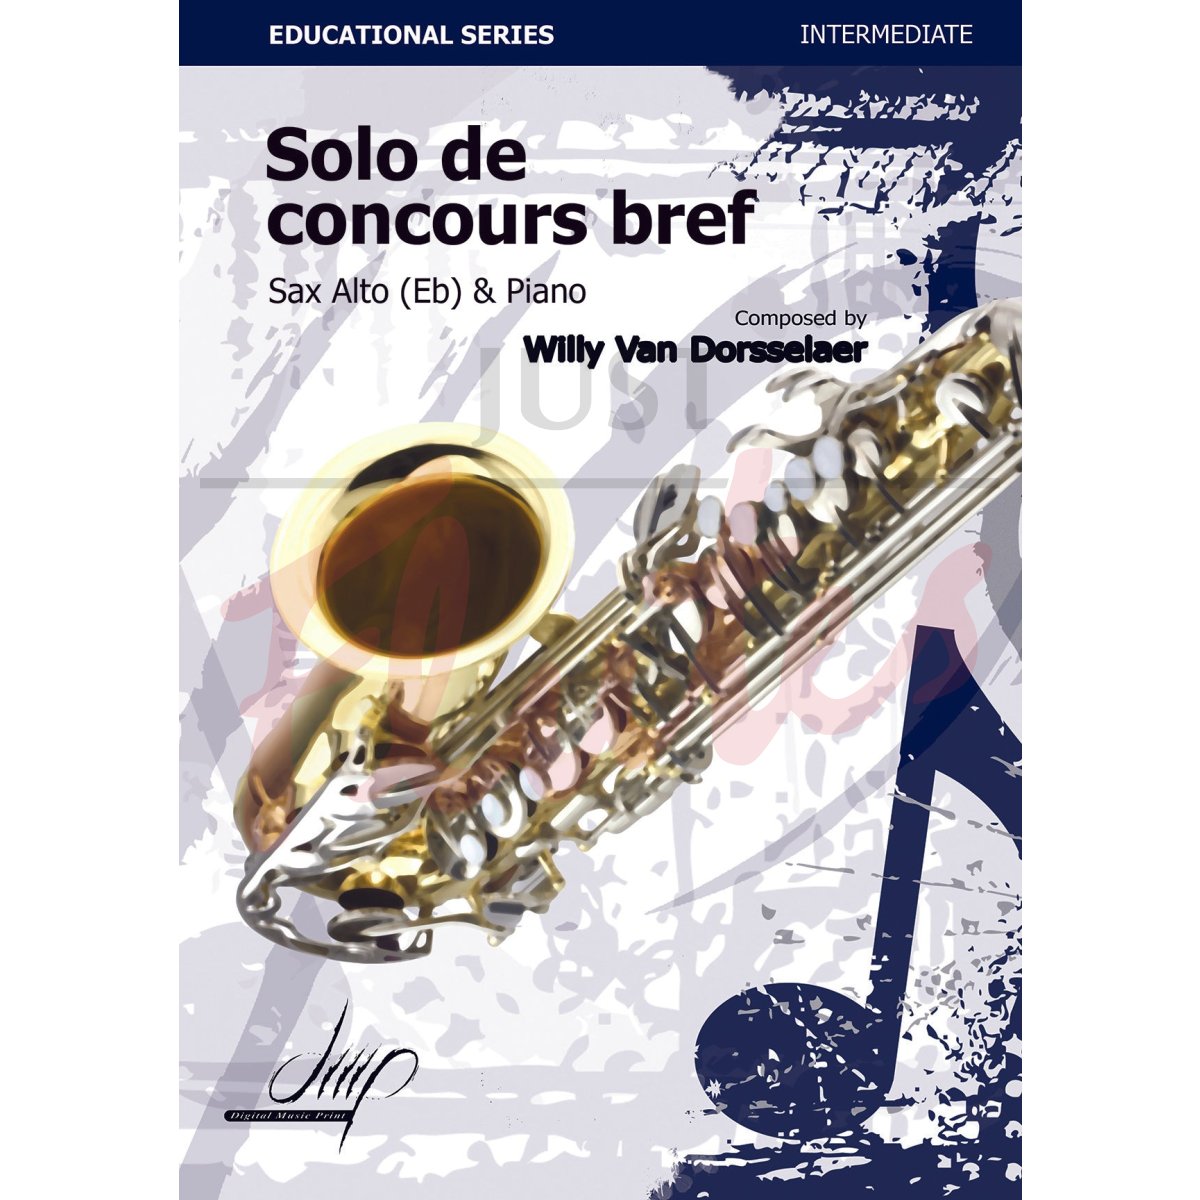 Solo de concours bref for Alto Saxophone and Piano